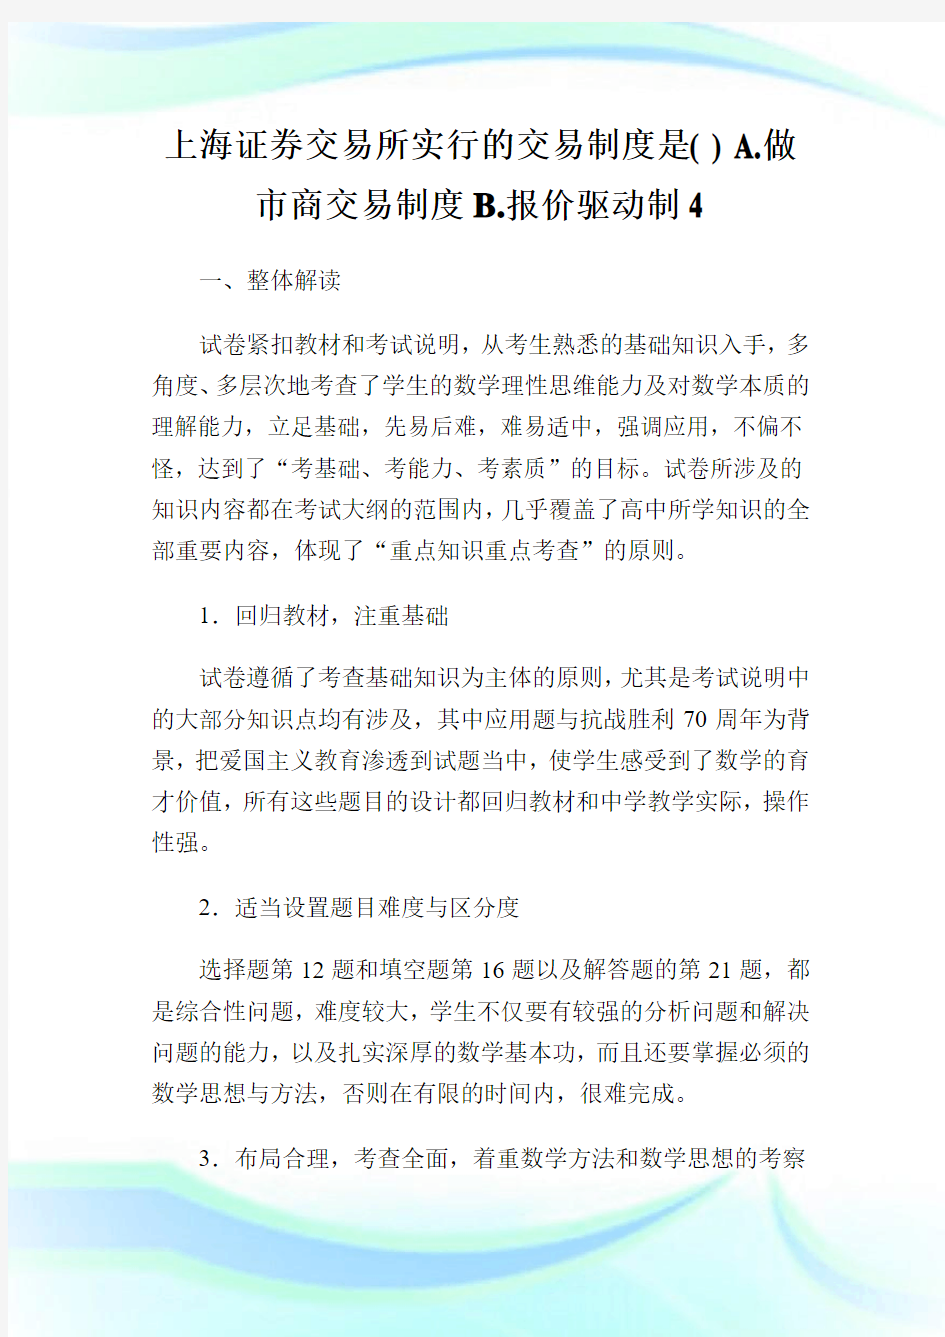 上海证券交易所实行的交易制度是( ) A.做市商交易制度B.报价驱动制4.doc